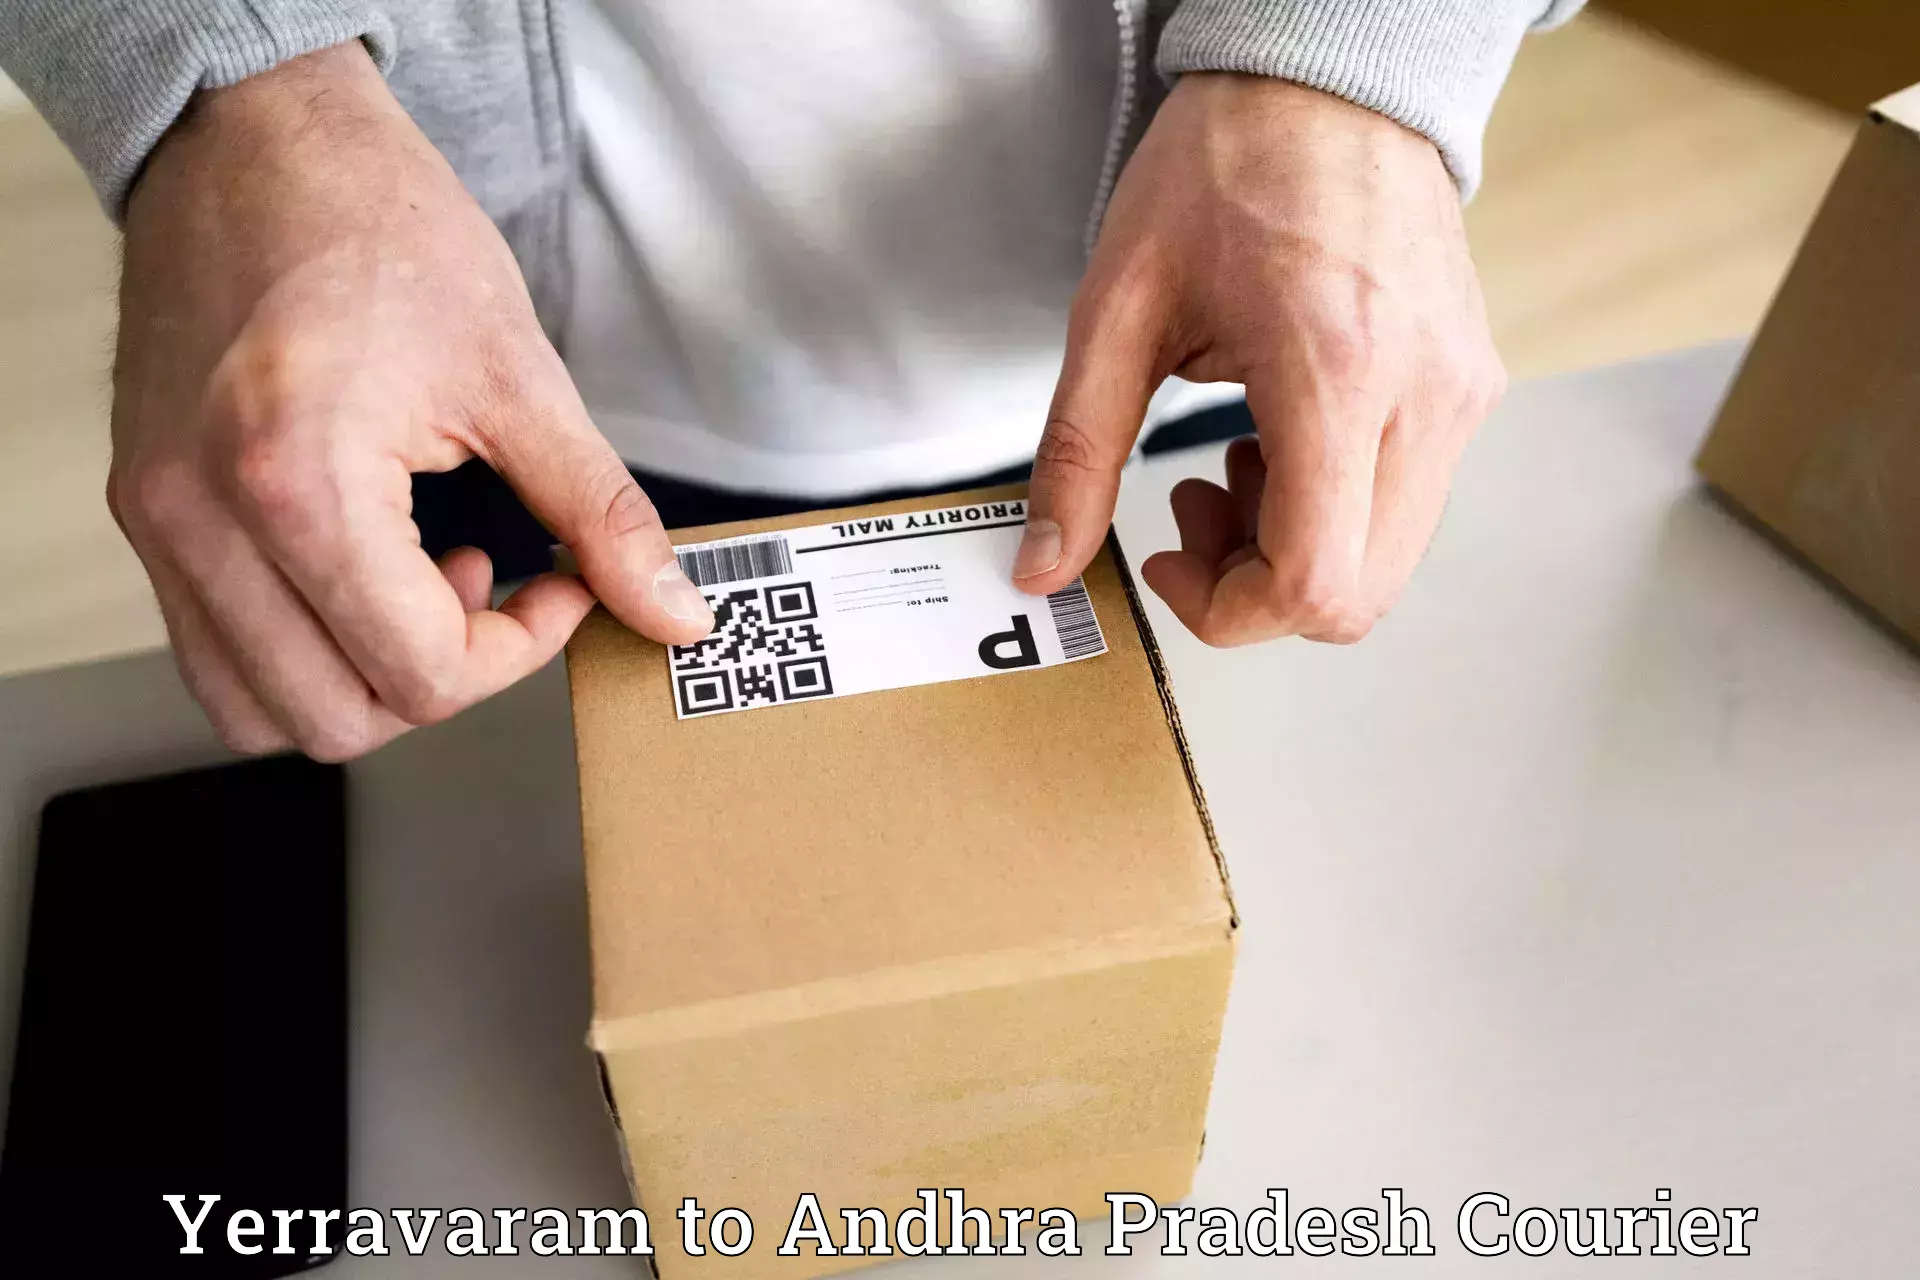 Next-day delivery options Yerravaram to Venkatagiri